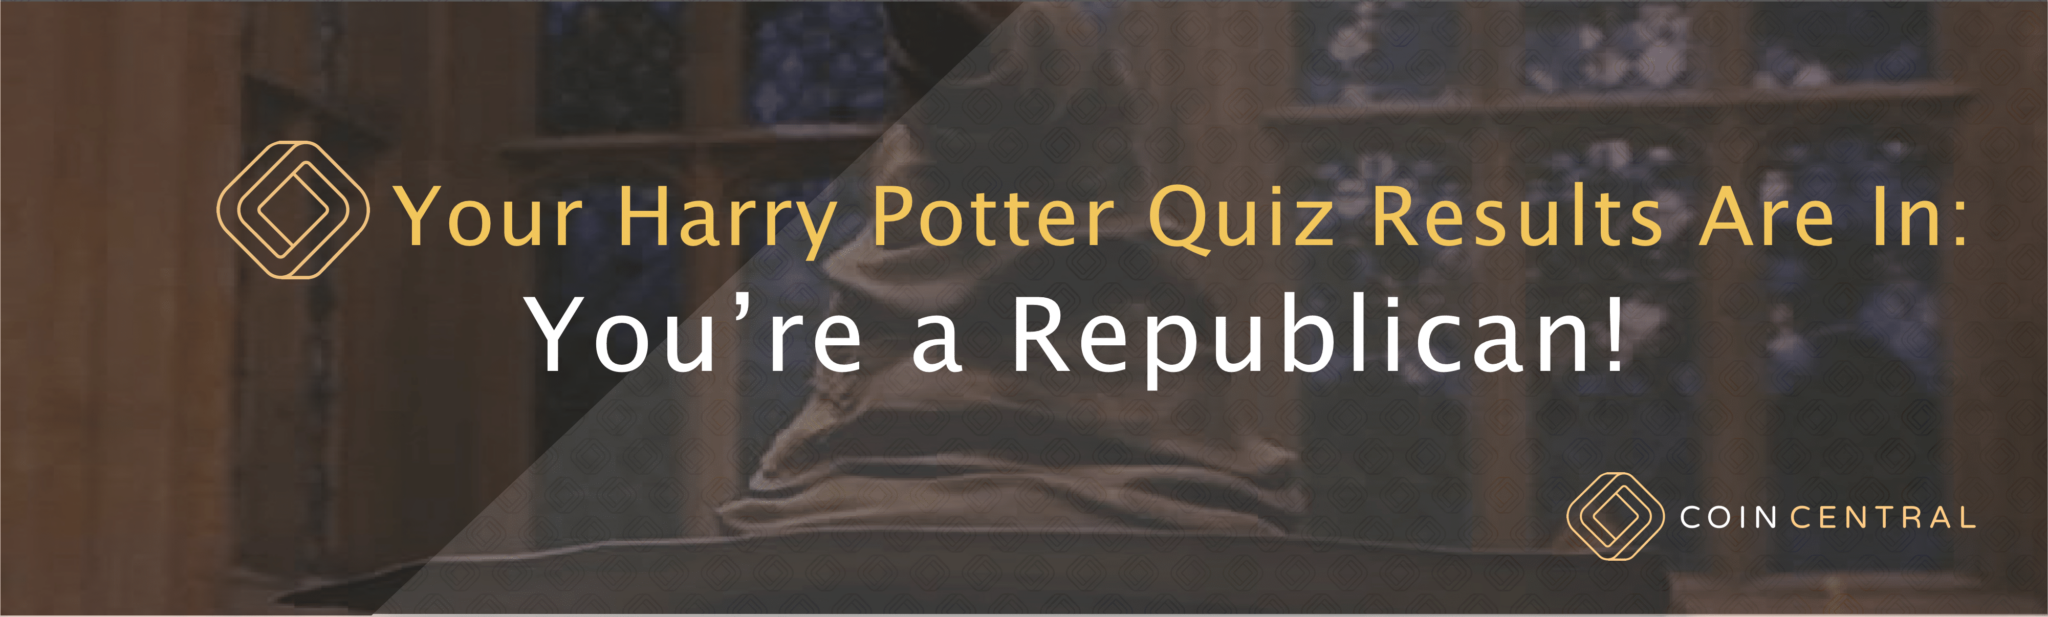 Harry Potter -kilpailu